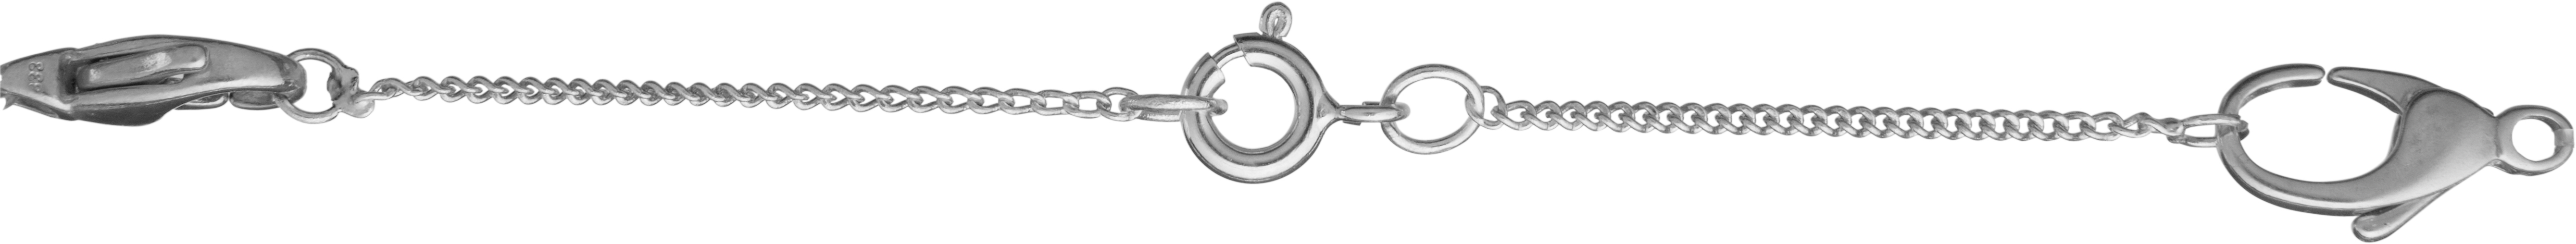 Łańcuszek zabezpieczający pancerka srebro 925/- biały długość 70,00mm, z federingiem i otwartym kółkiem montażowym